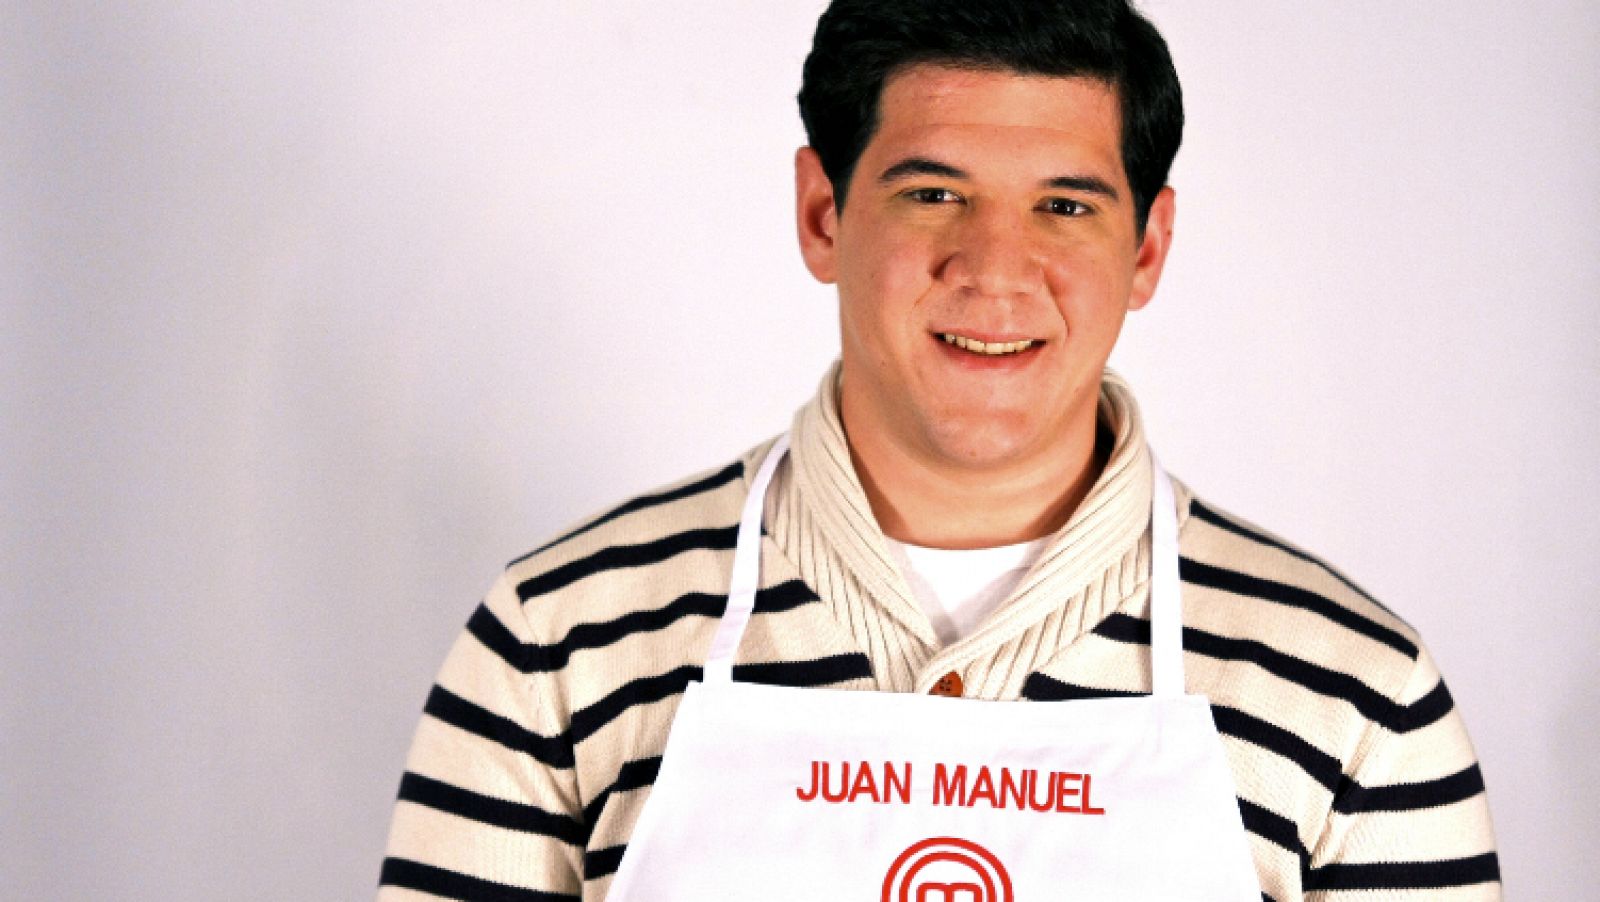 MasterChef - Juan Manuel. 25 años, camarero (Almería)